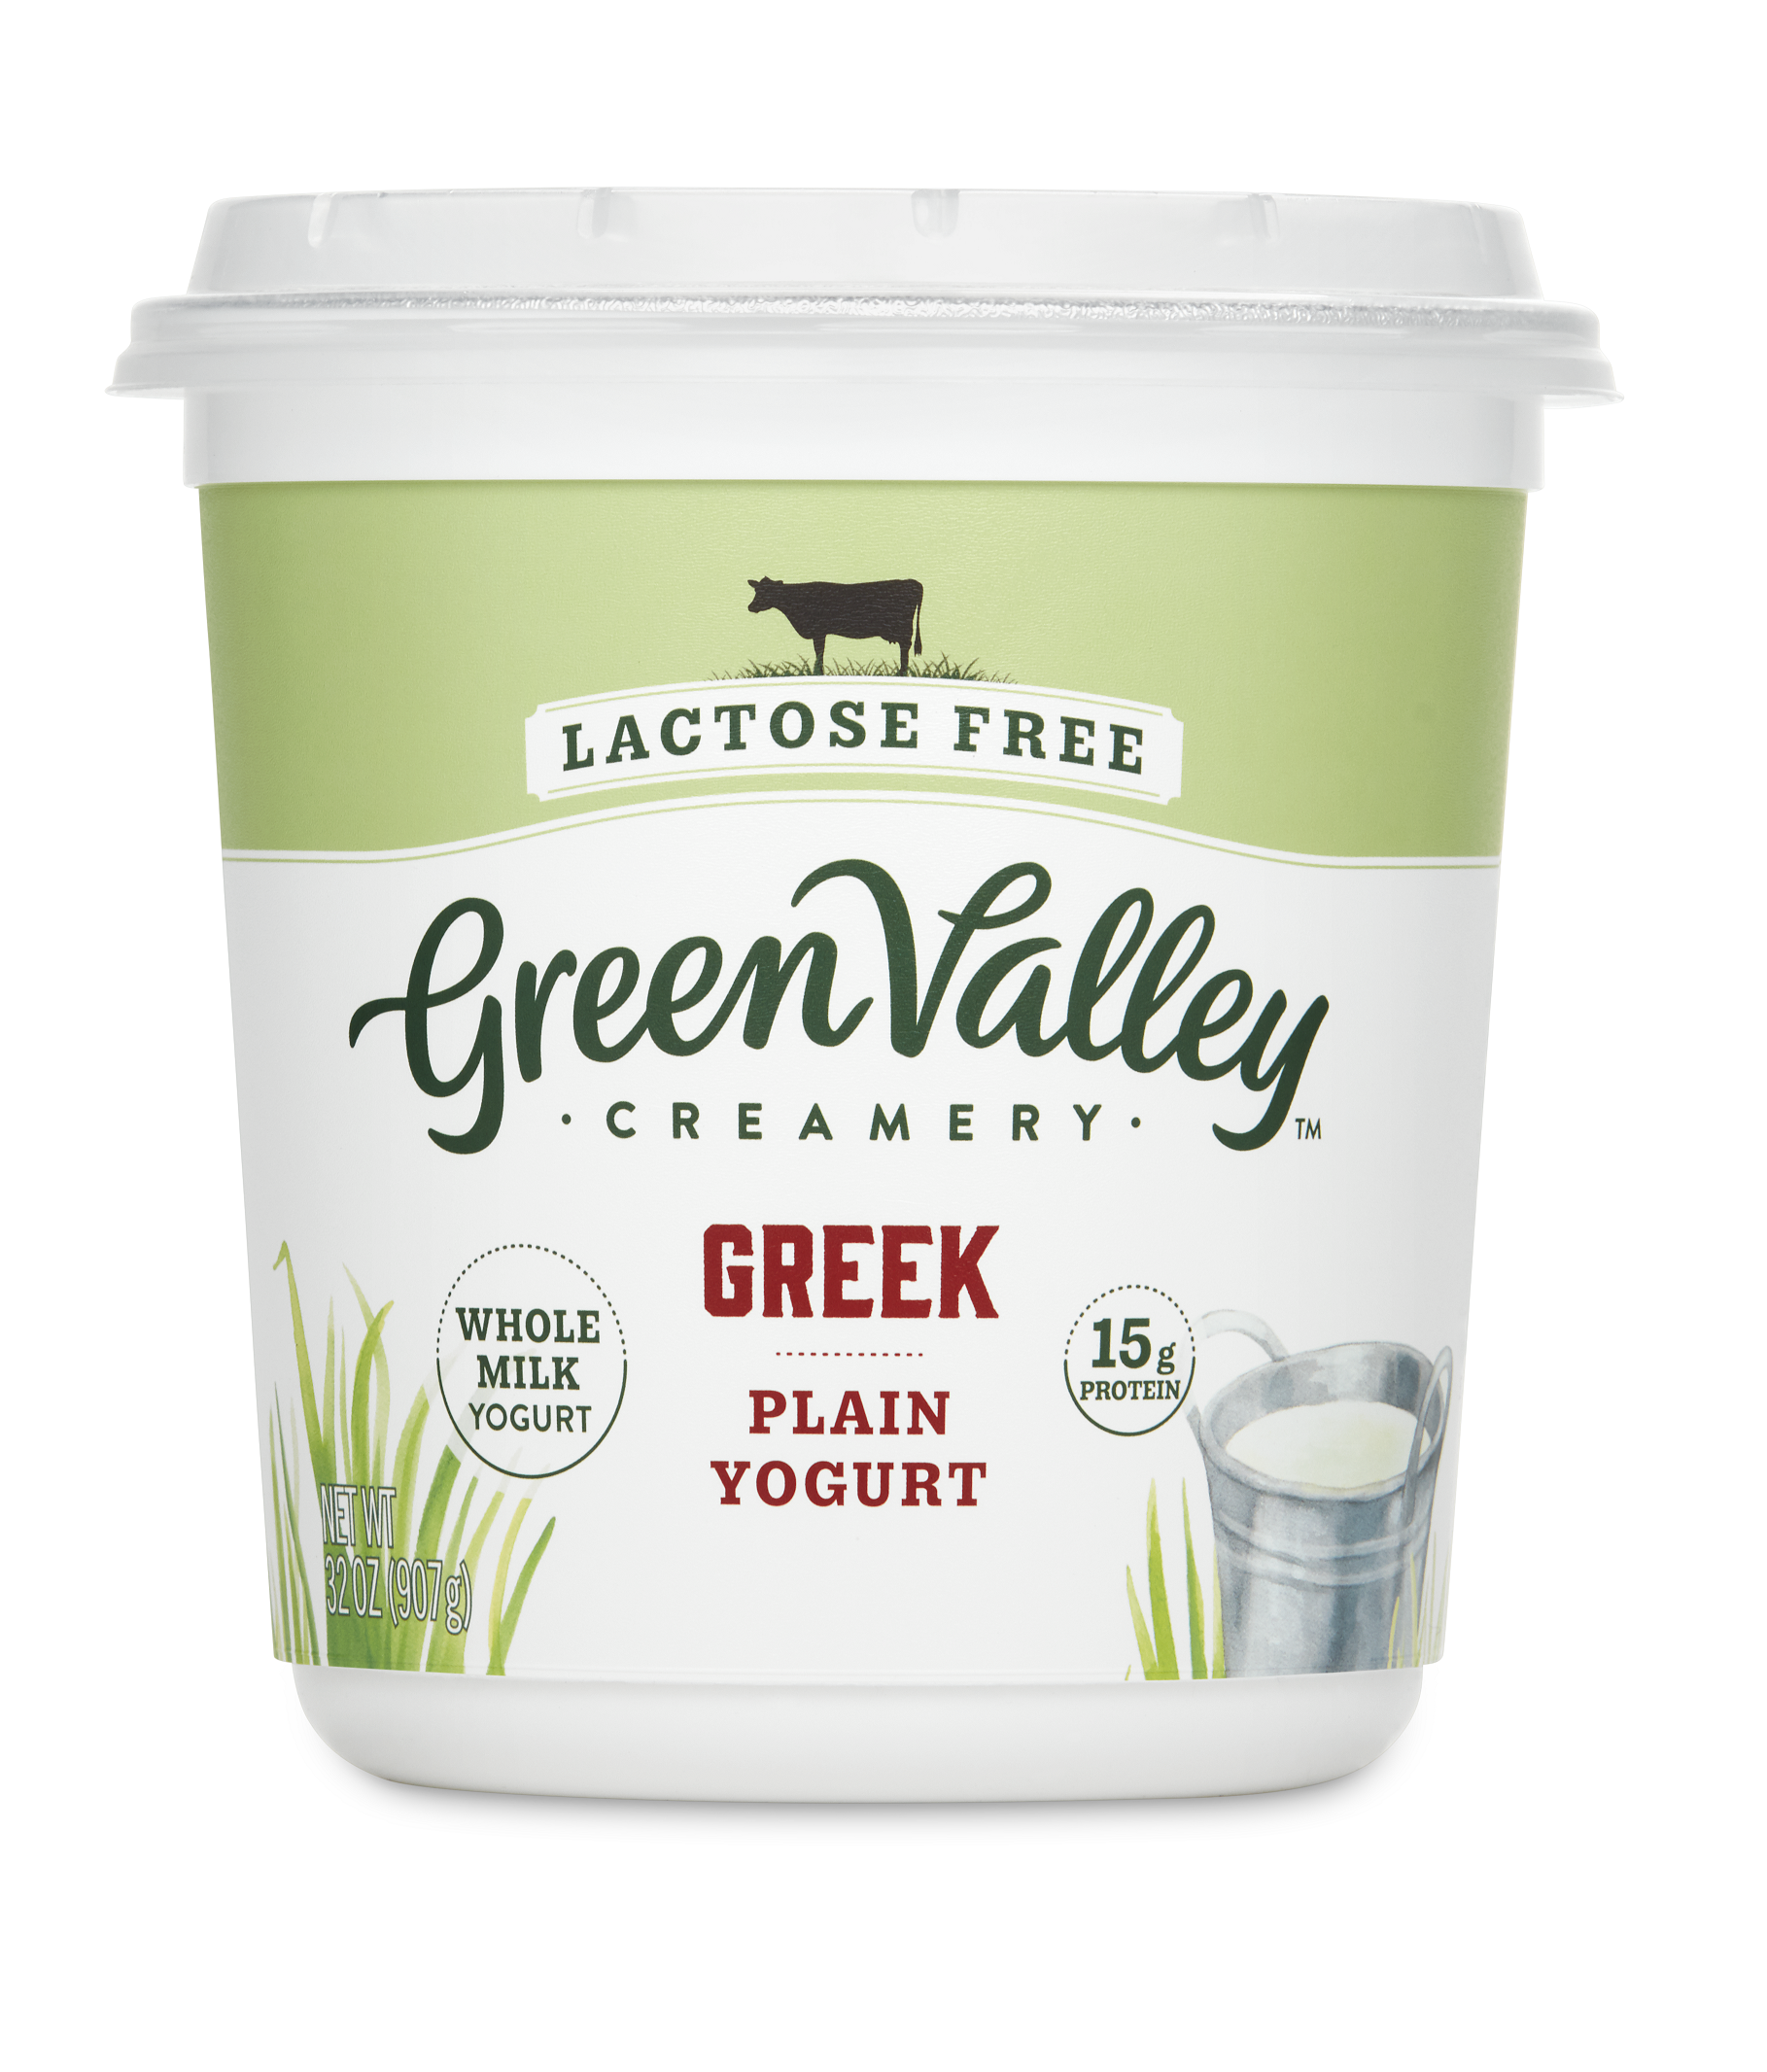 New Fodmap Friendly Certified Greek Yogurt From Green Valley